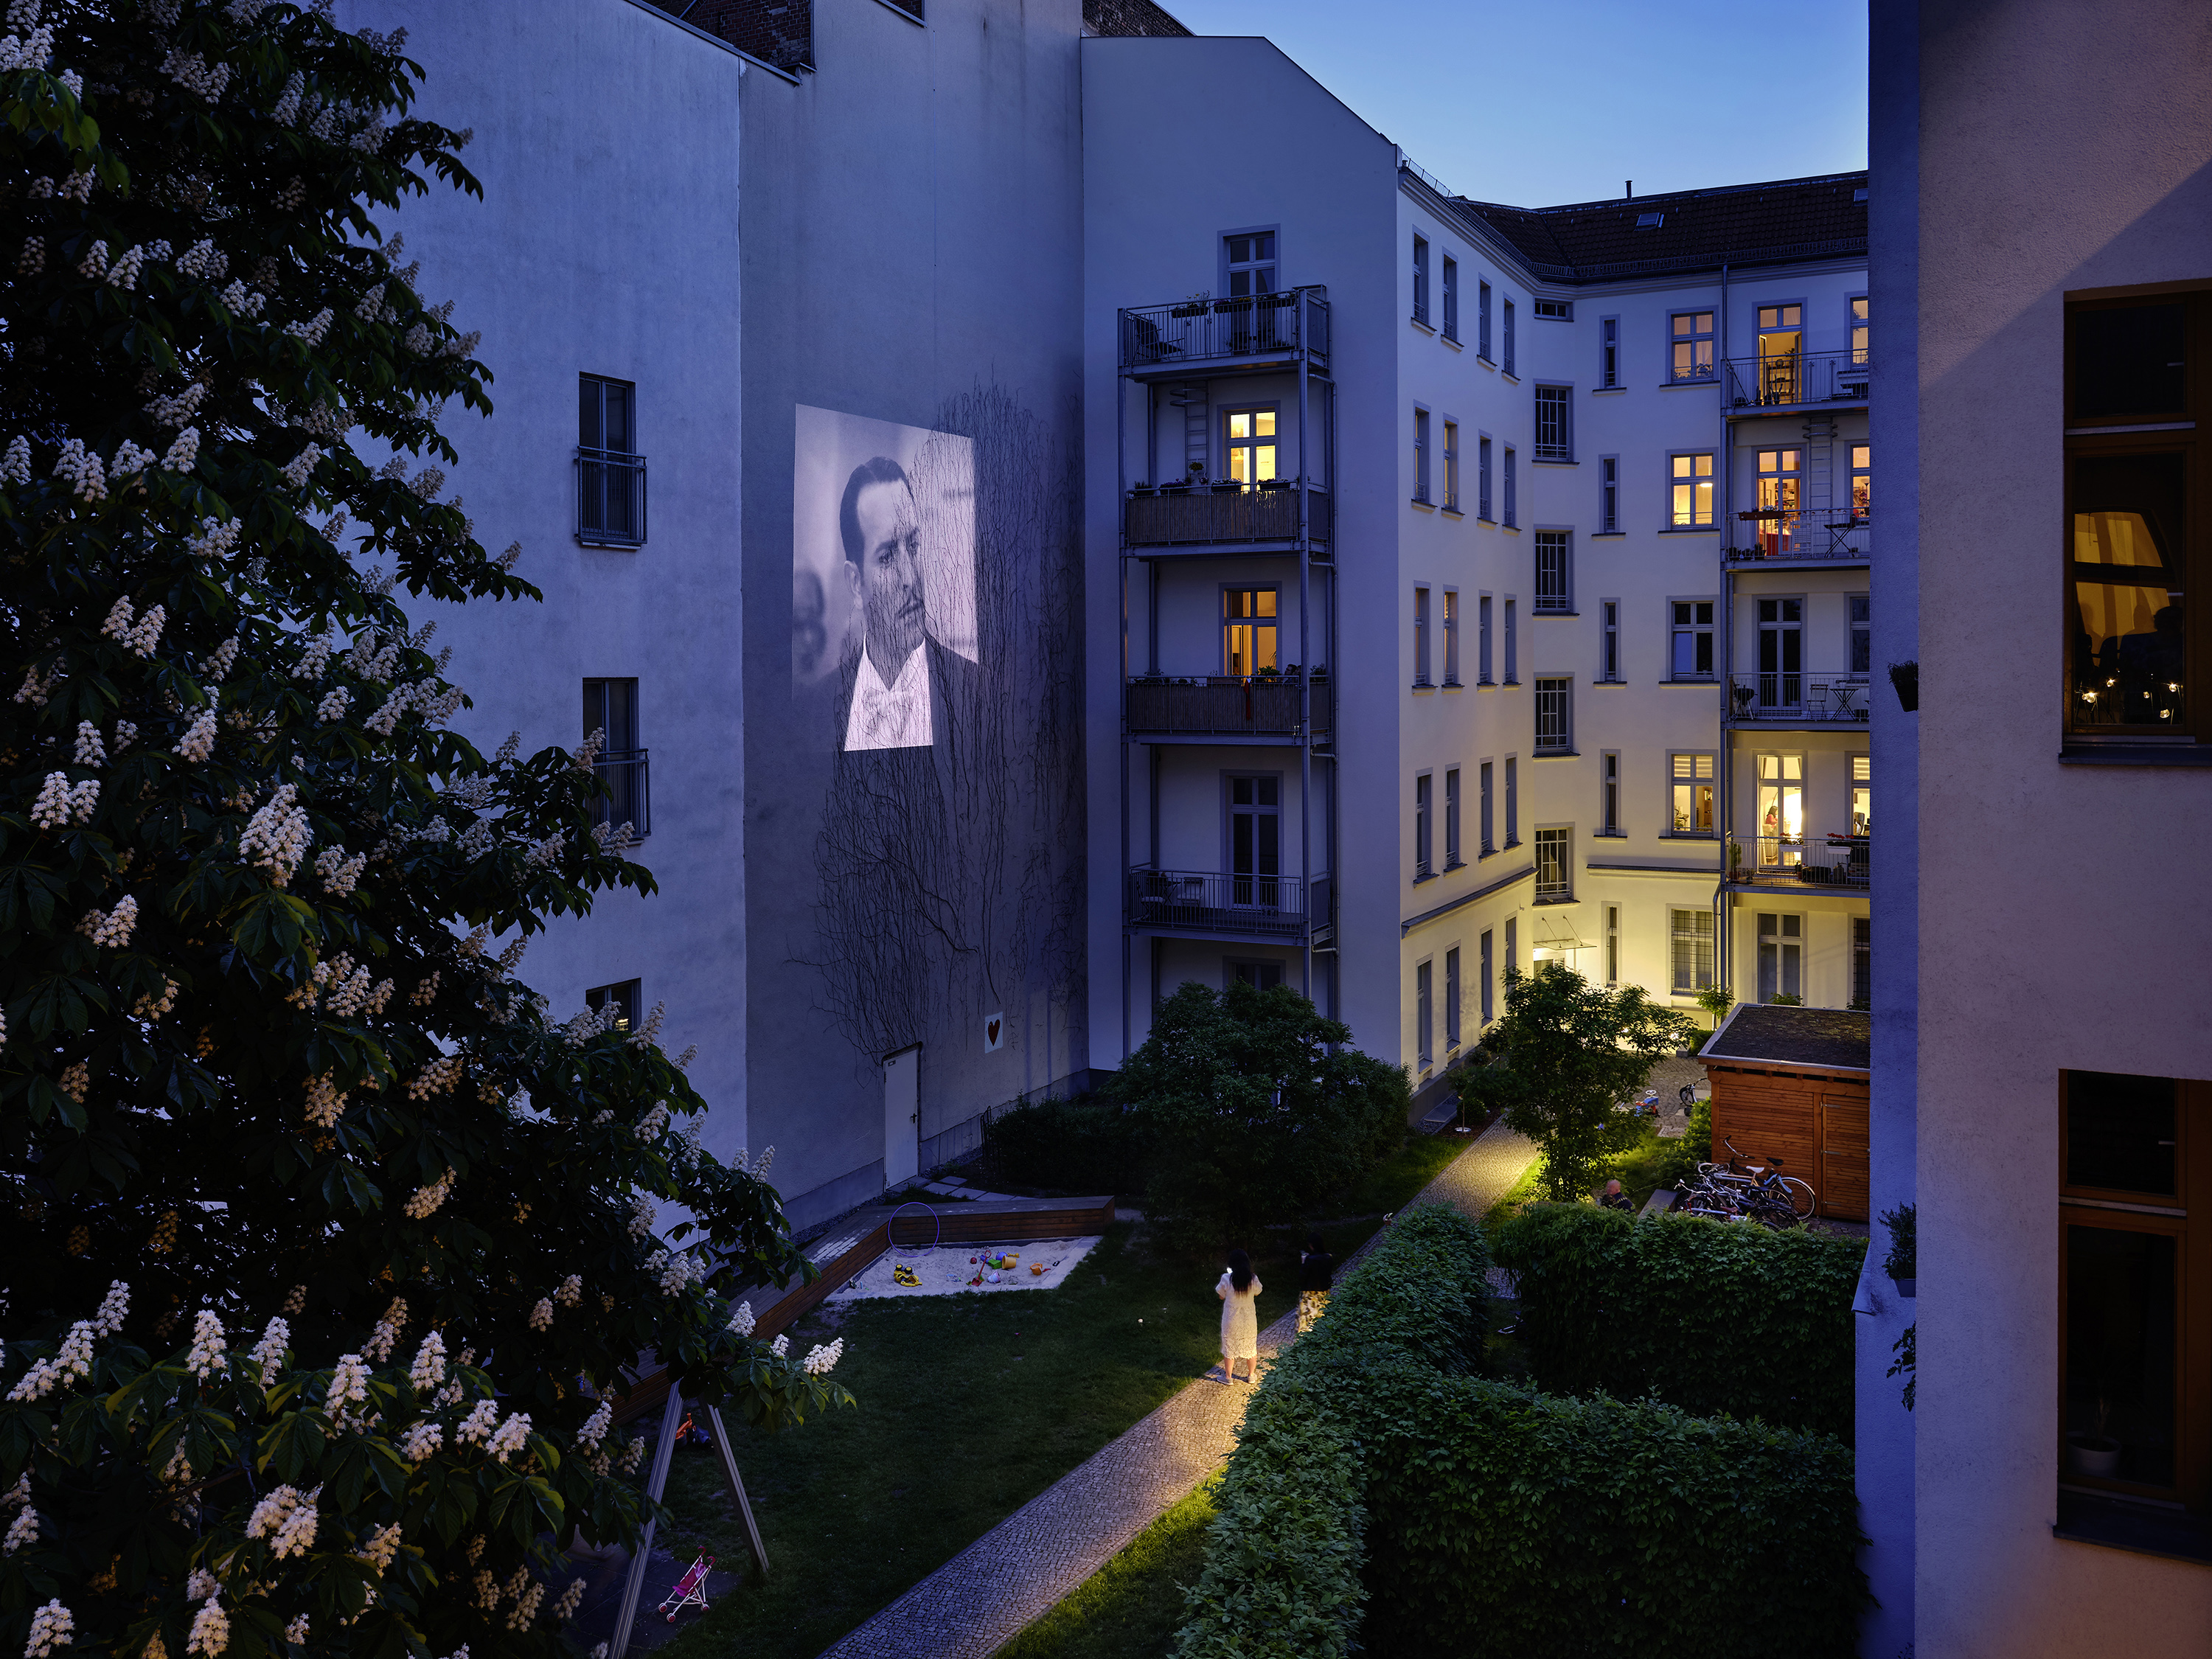 Der Film „The Artist“ wird in einem Hinterhof im Berliner Stadtteil Wedding gezeigt. Foto:&nbsp;Joris van Velzen